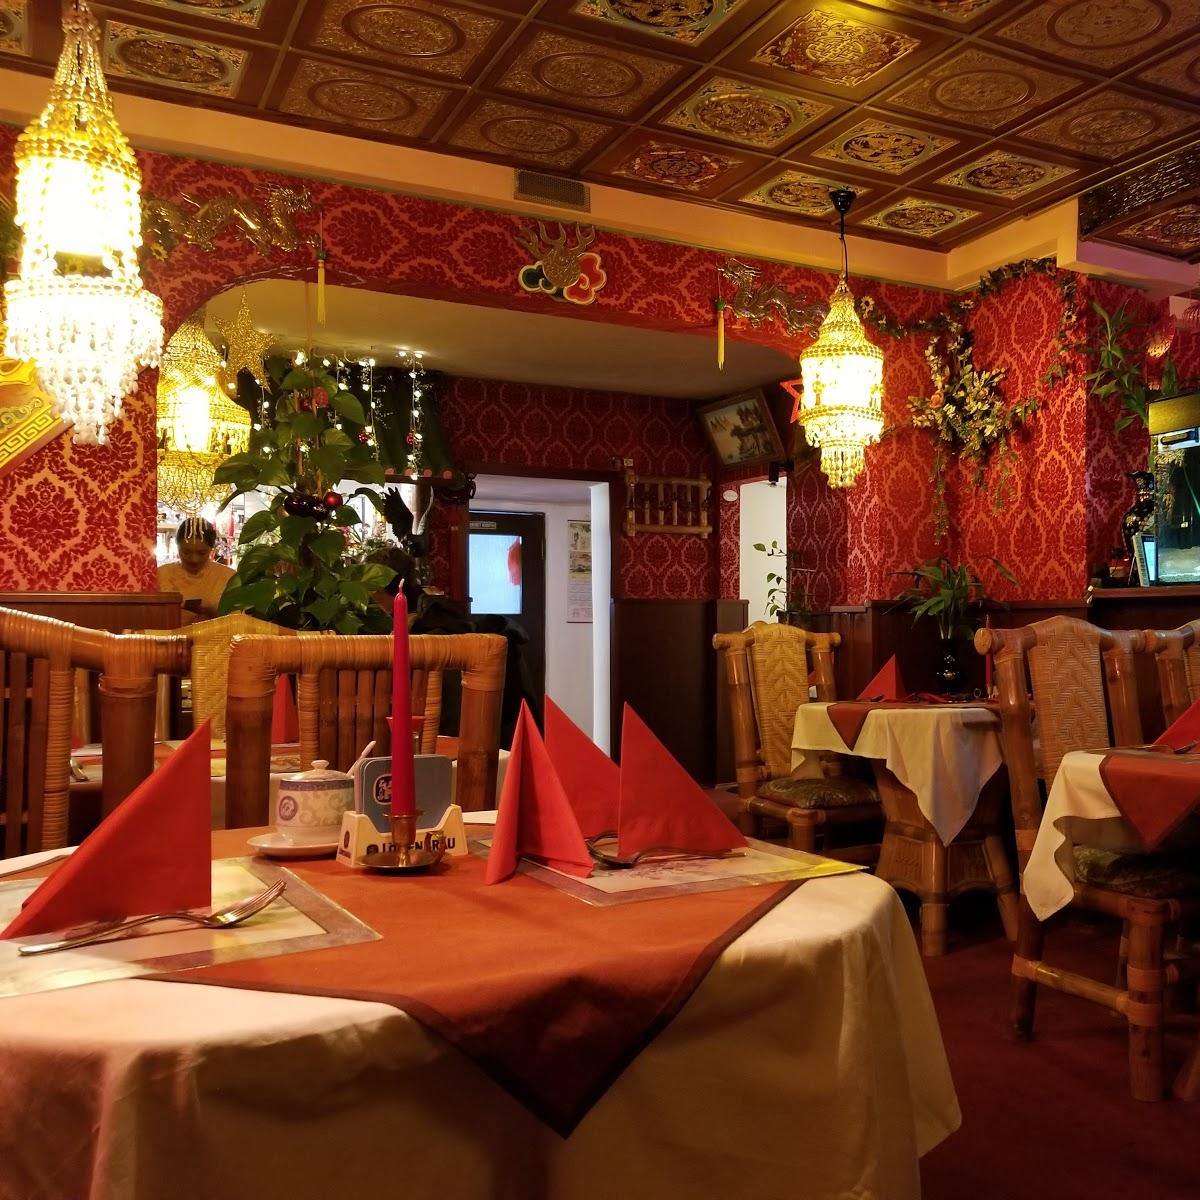 Restaurant "China Garden" in Garmisch-Partenkirchen